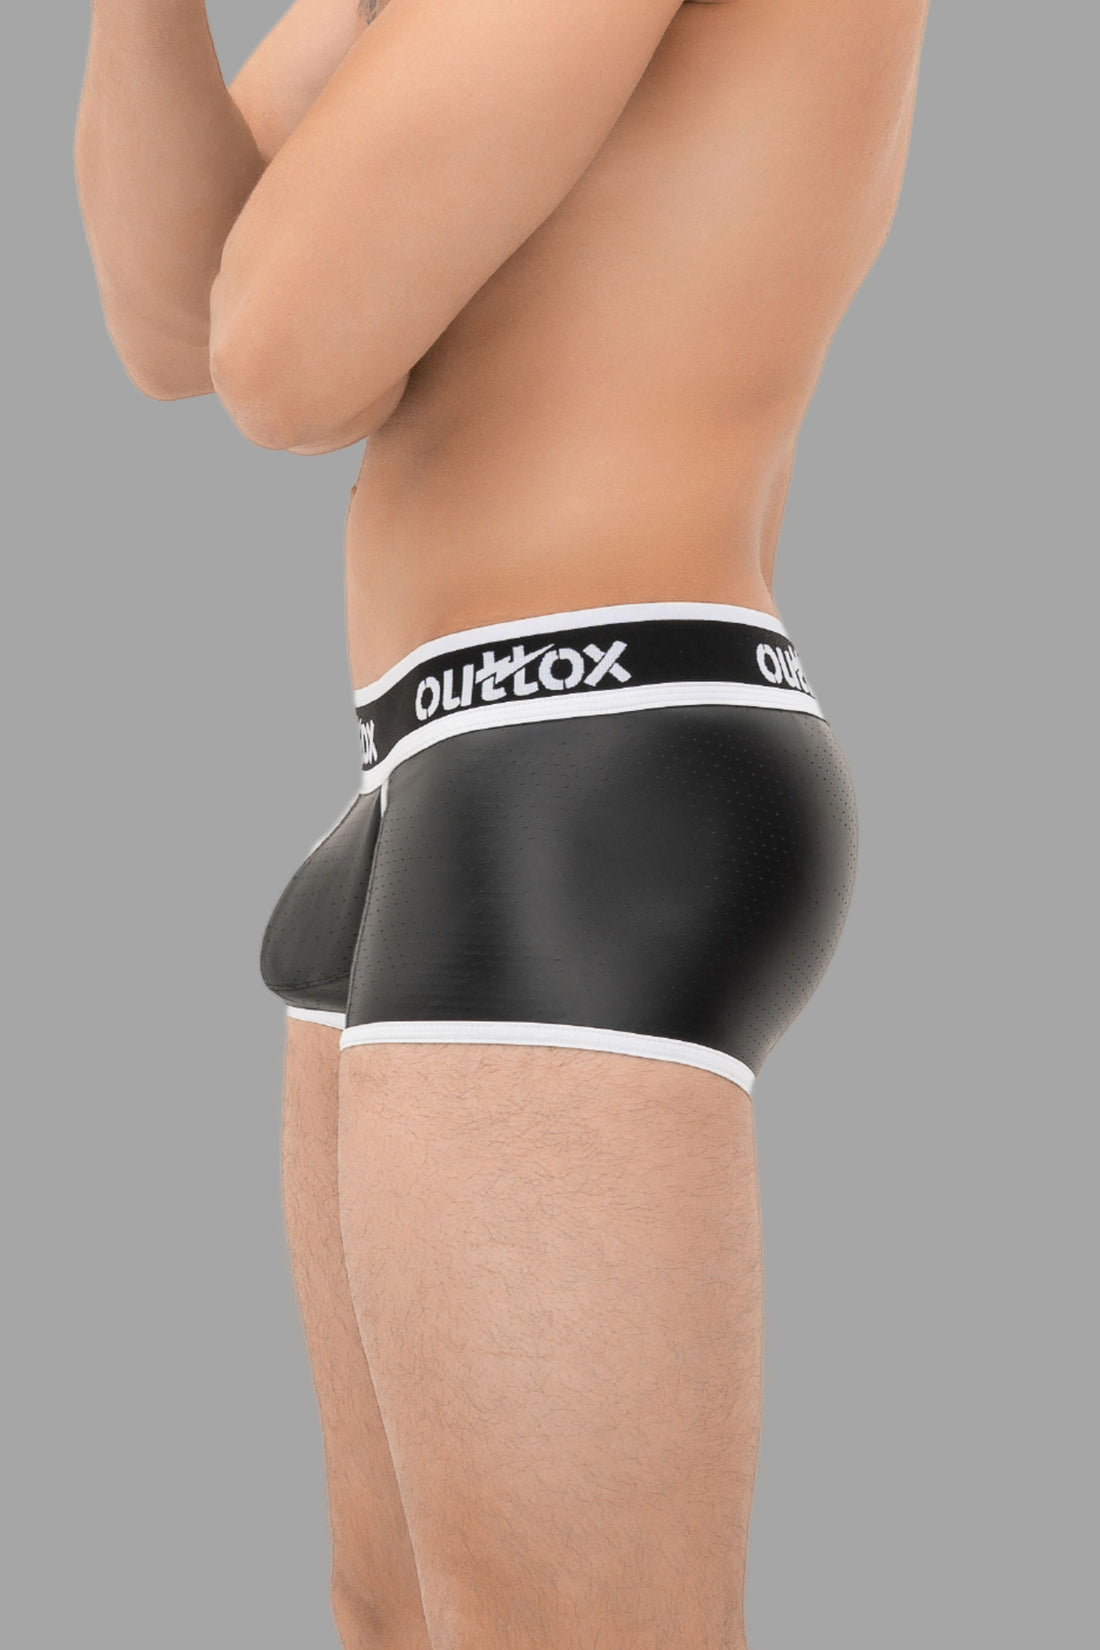 Outtox. Pantalones cortos traseros envueltos con bragueta a presión. Negro+Blanco